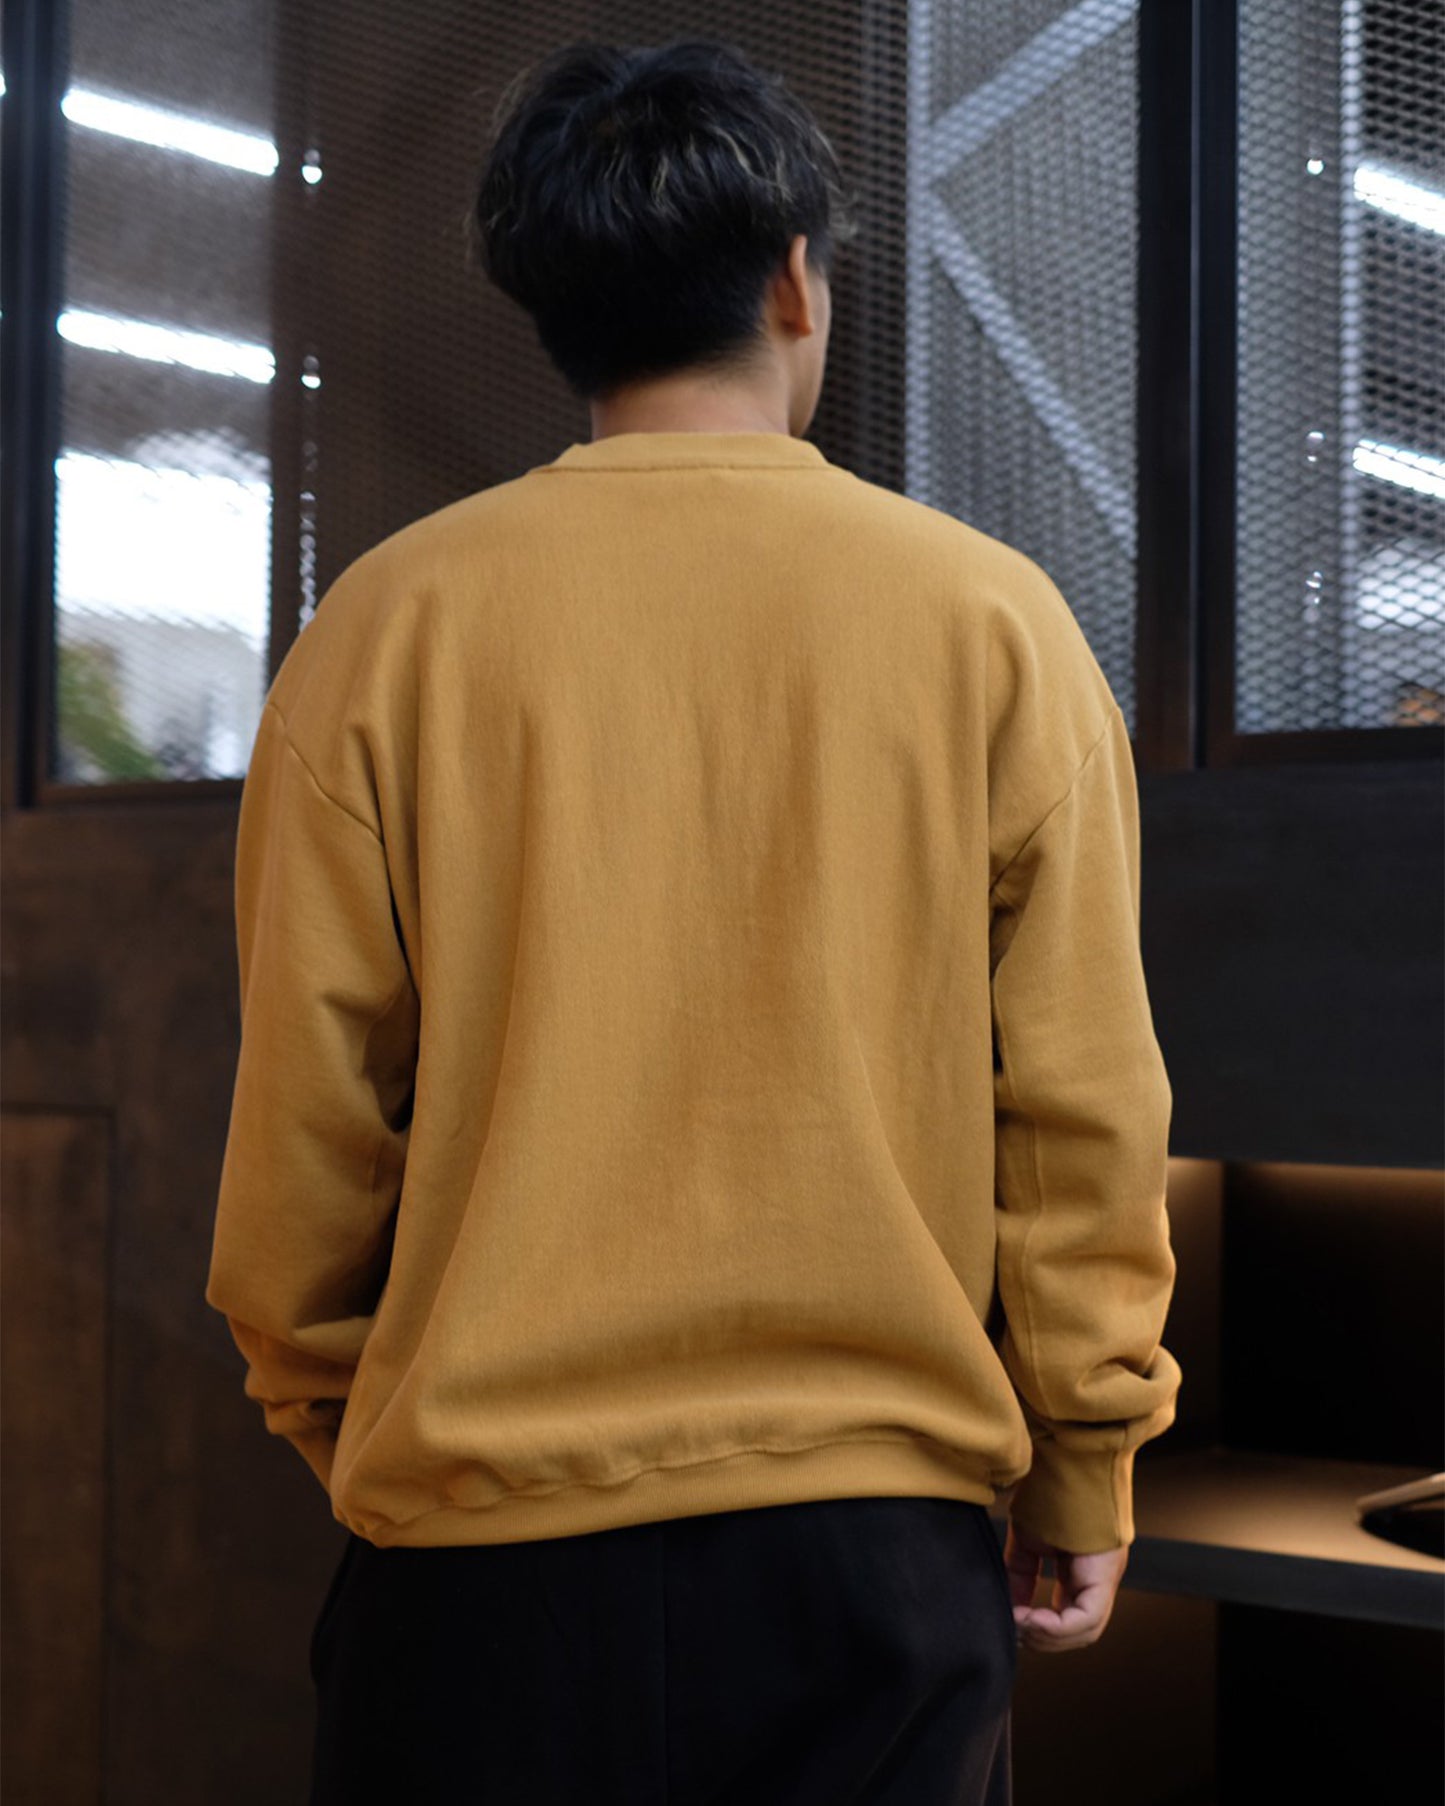 アリーズ/Premium Temple Sweatshirt/スウェット/Camel